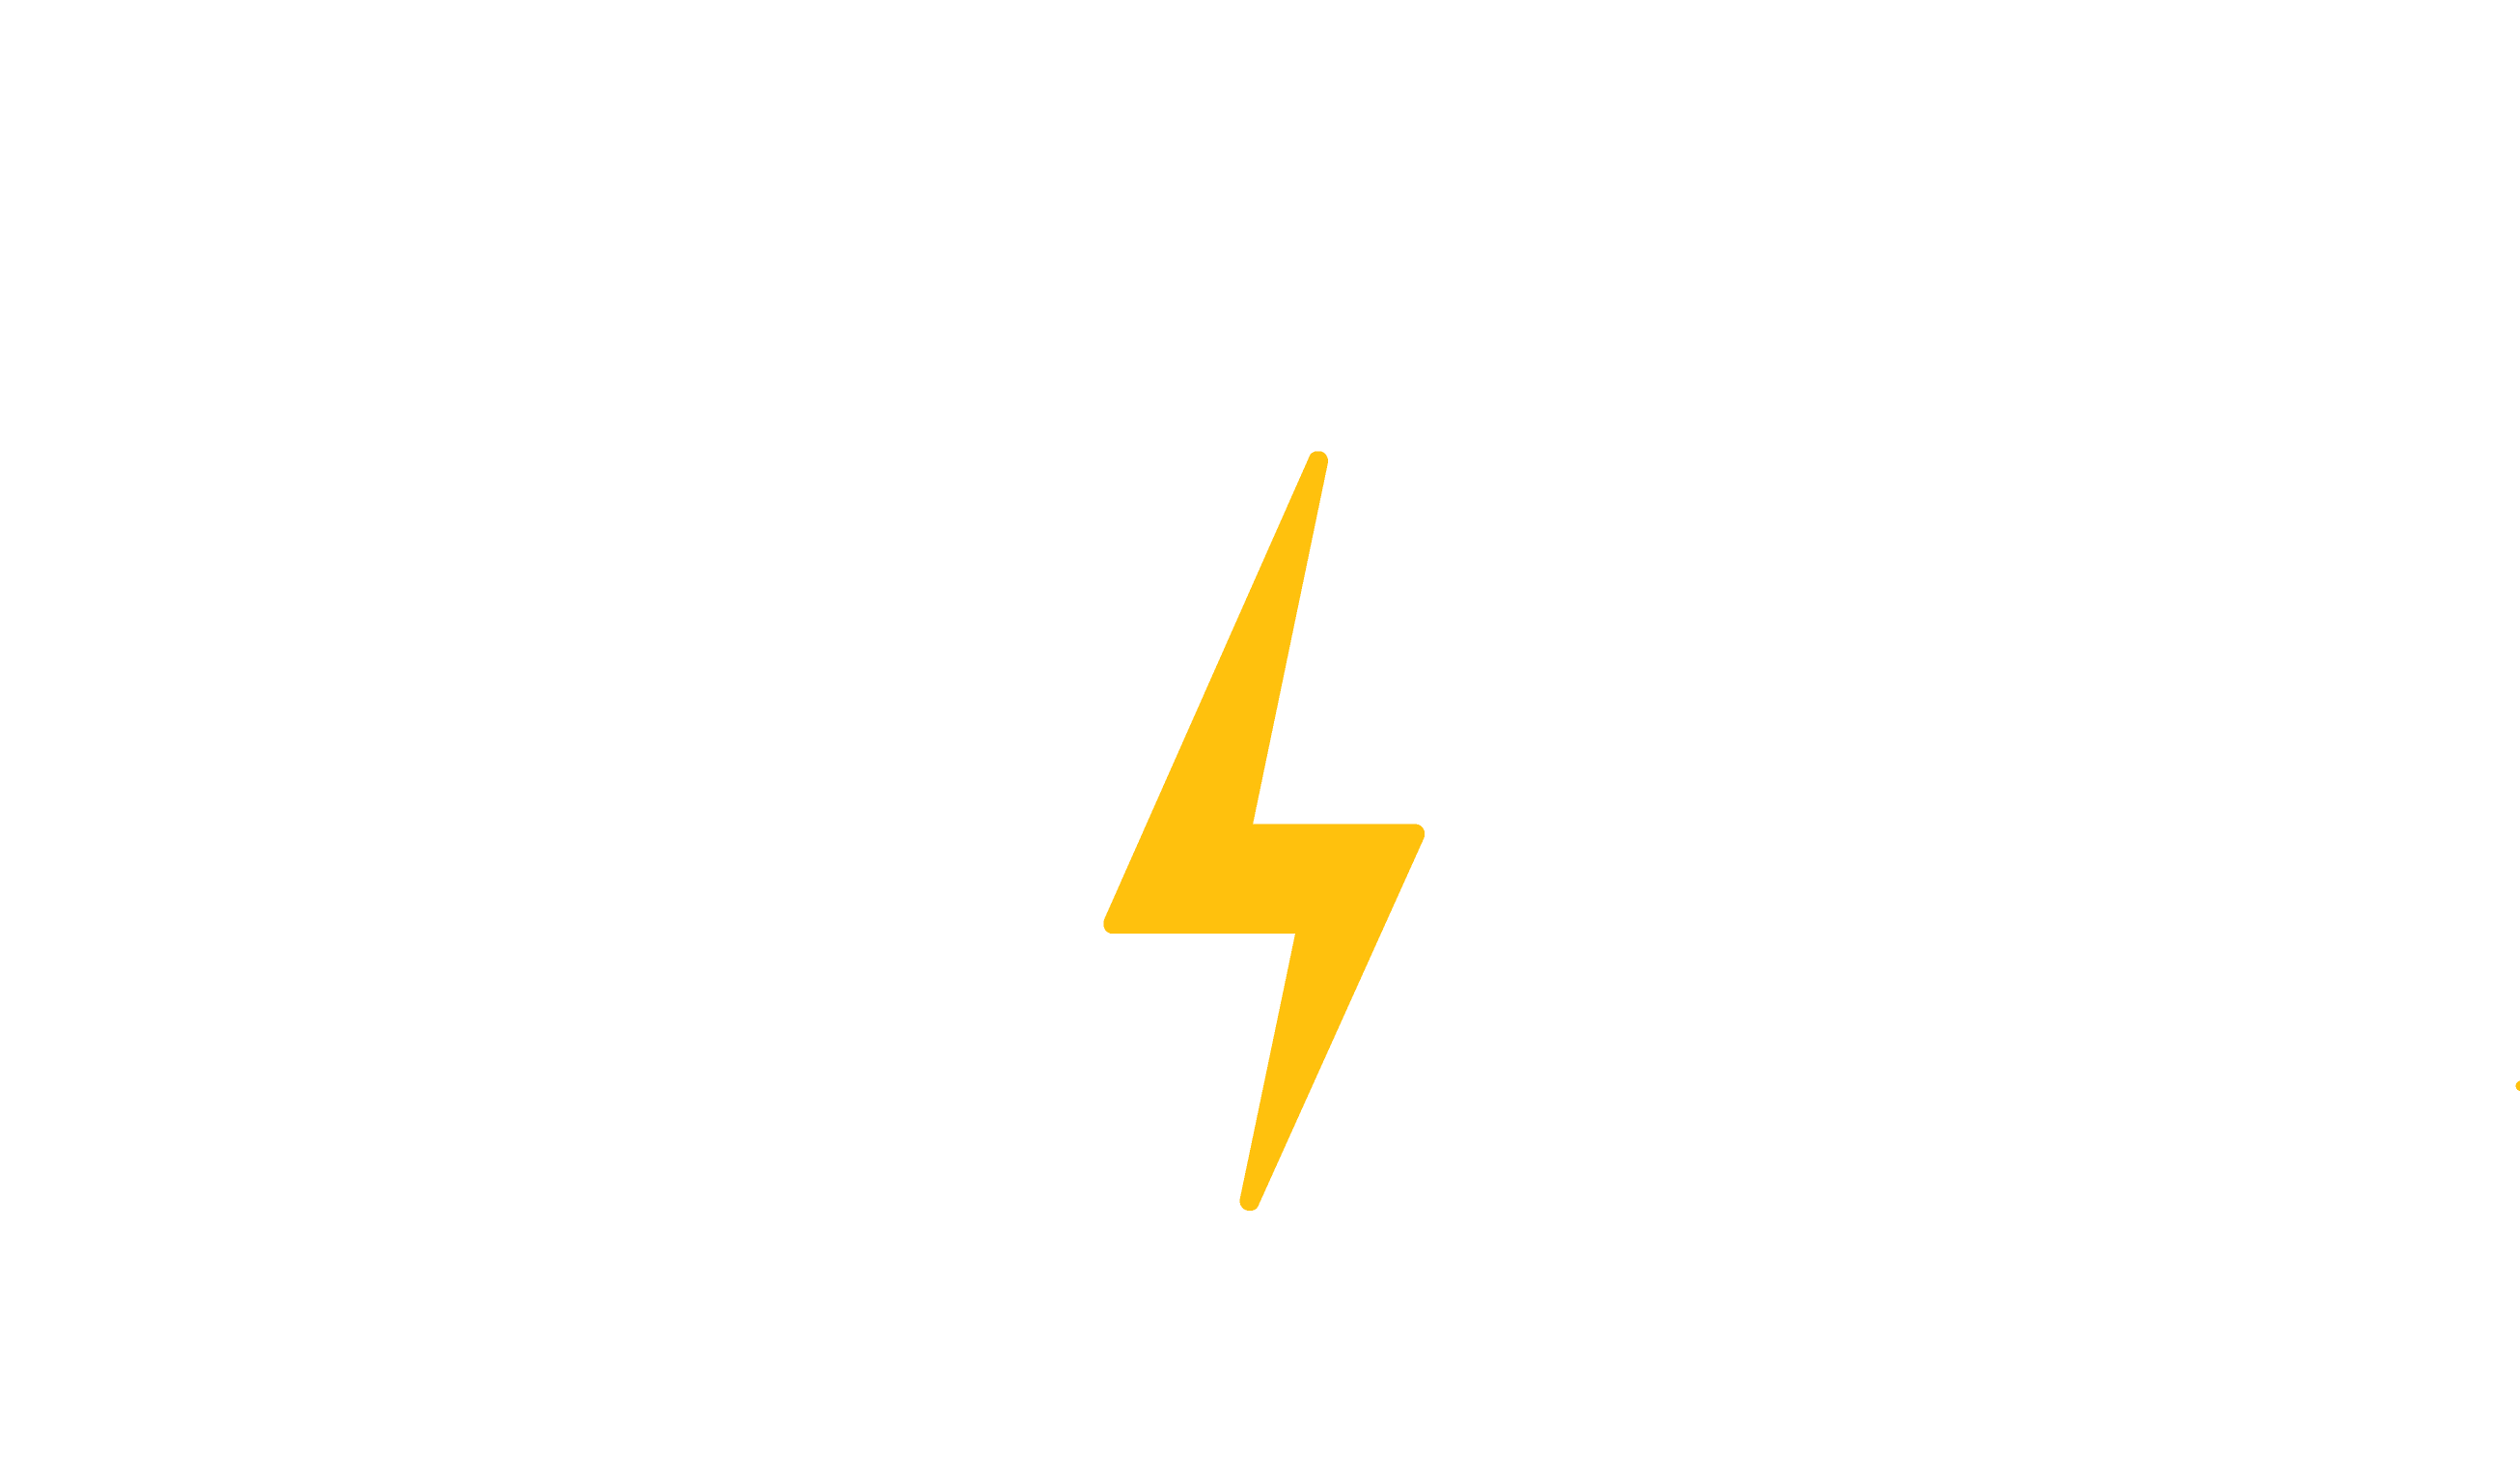 www.sparkcycleworks.com